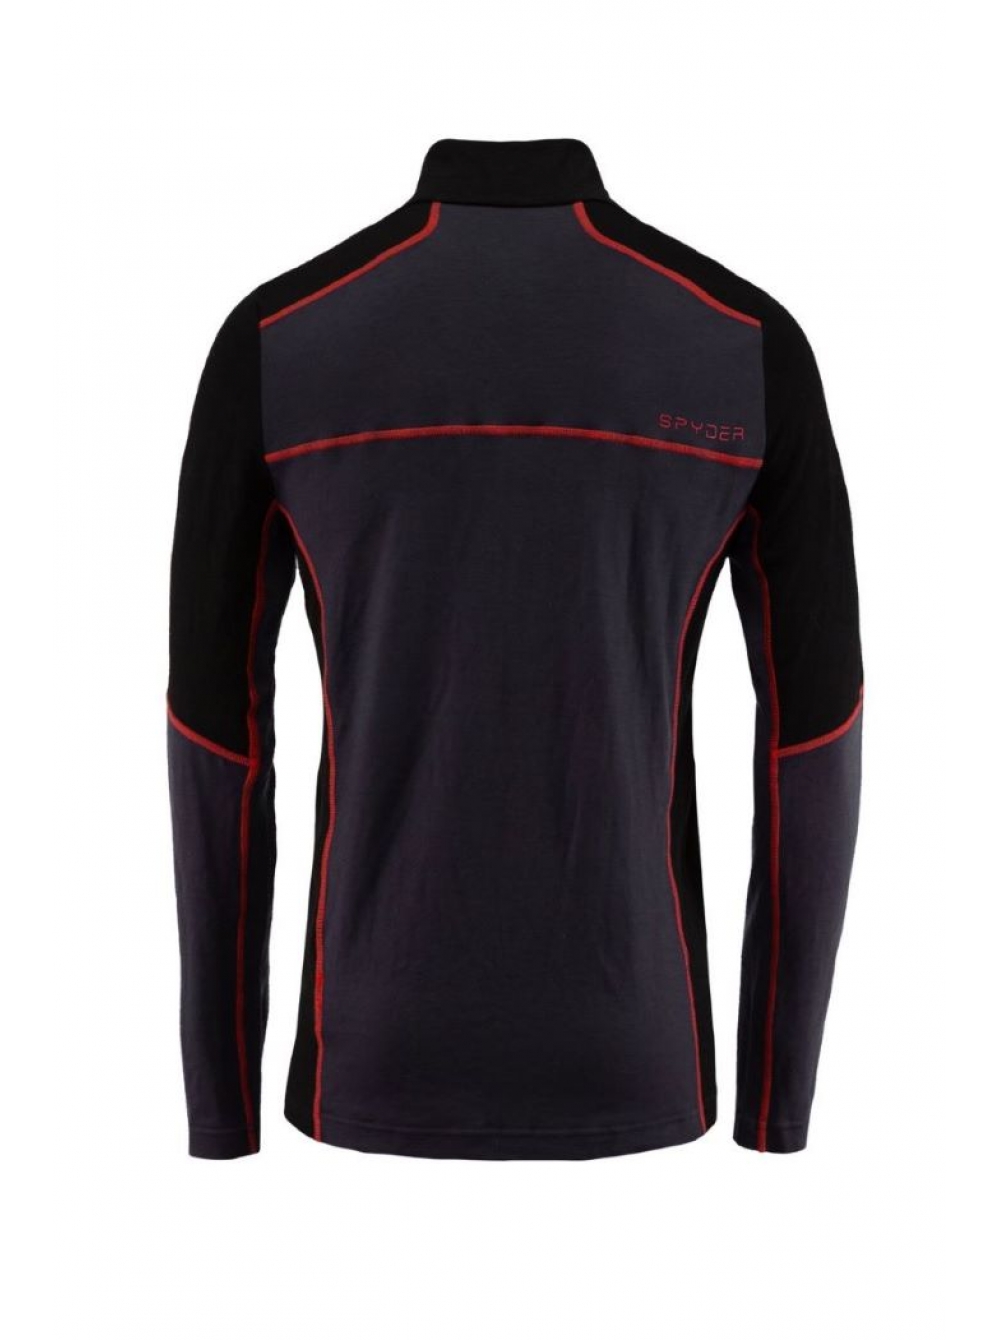 Термобелье мужское блуза Spyder Elevation Half Zip 029: купить в интернетмагазине. Описание, характеристики, цена, отзывы – интернет-магазинaktyv.com.ua